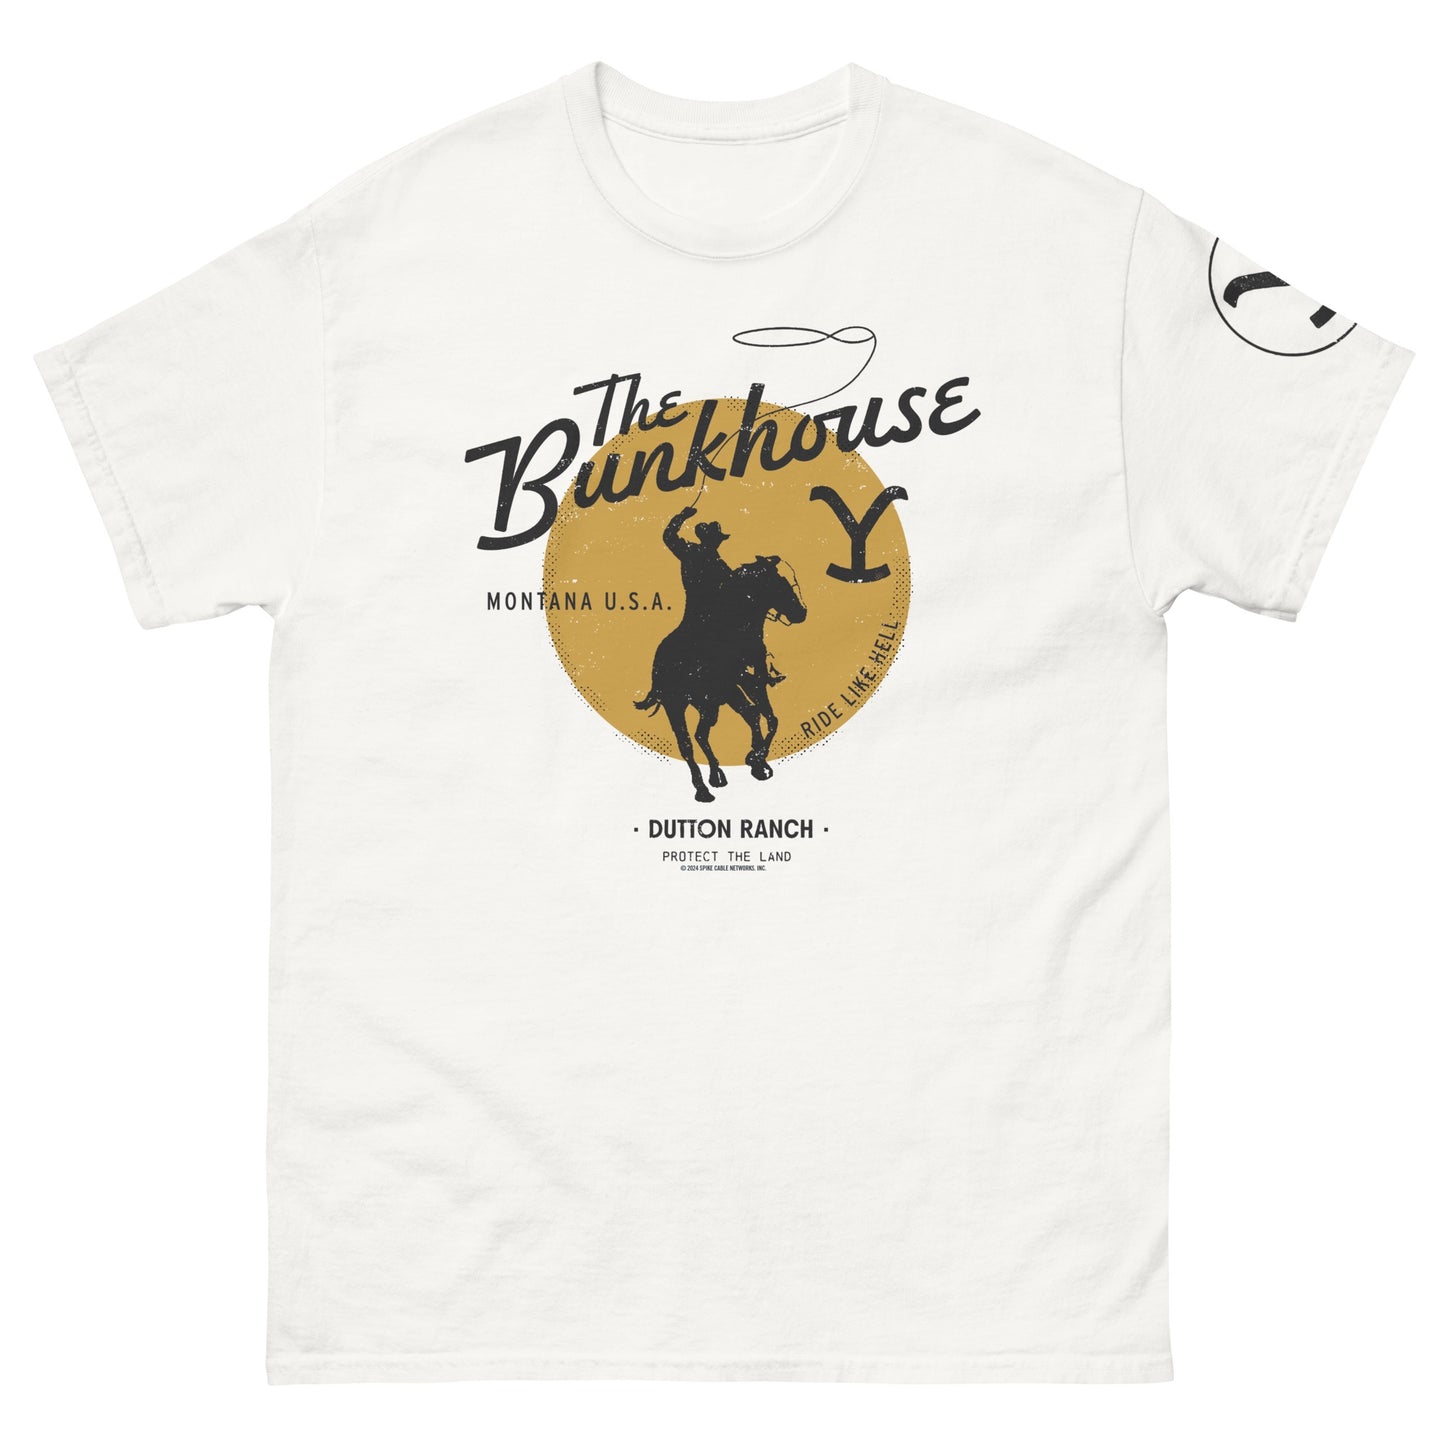 Yellowstone Bunkhouse Adult T-Shirt